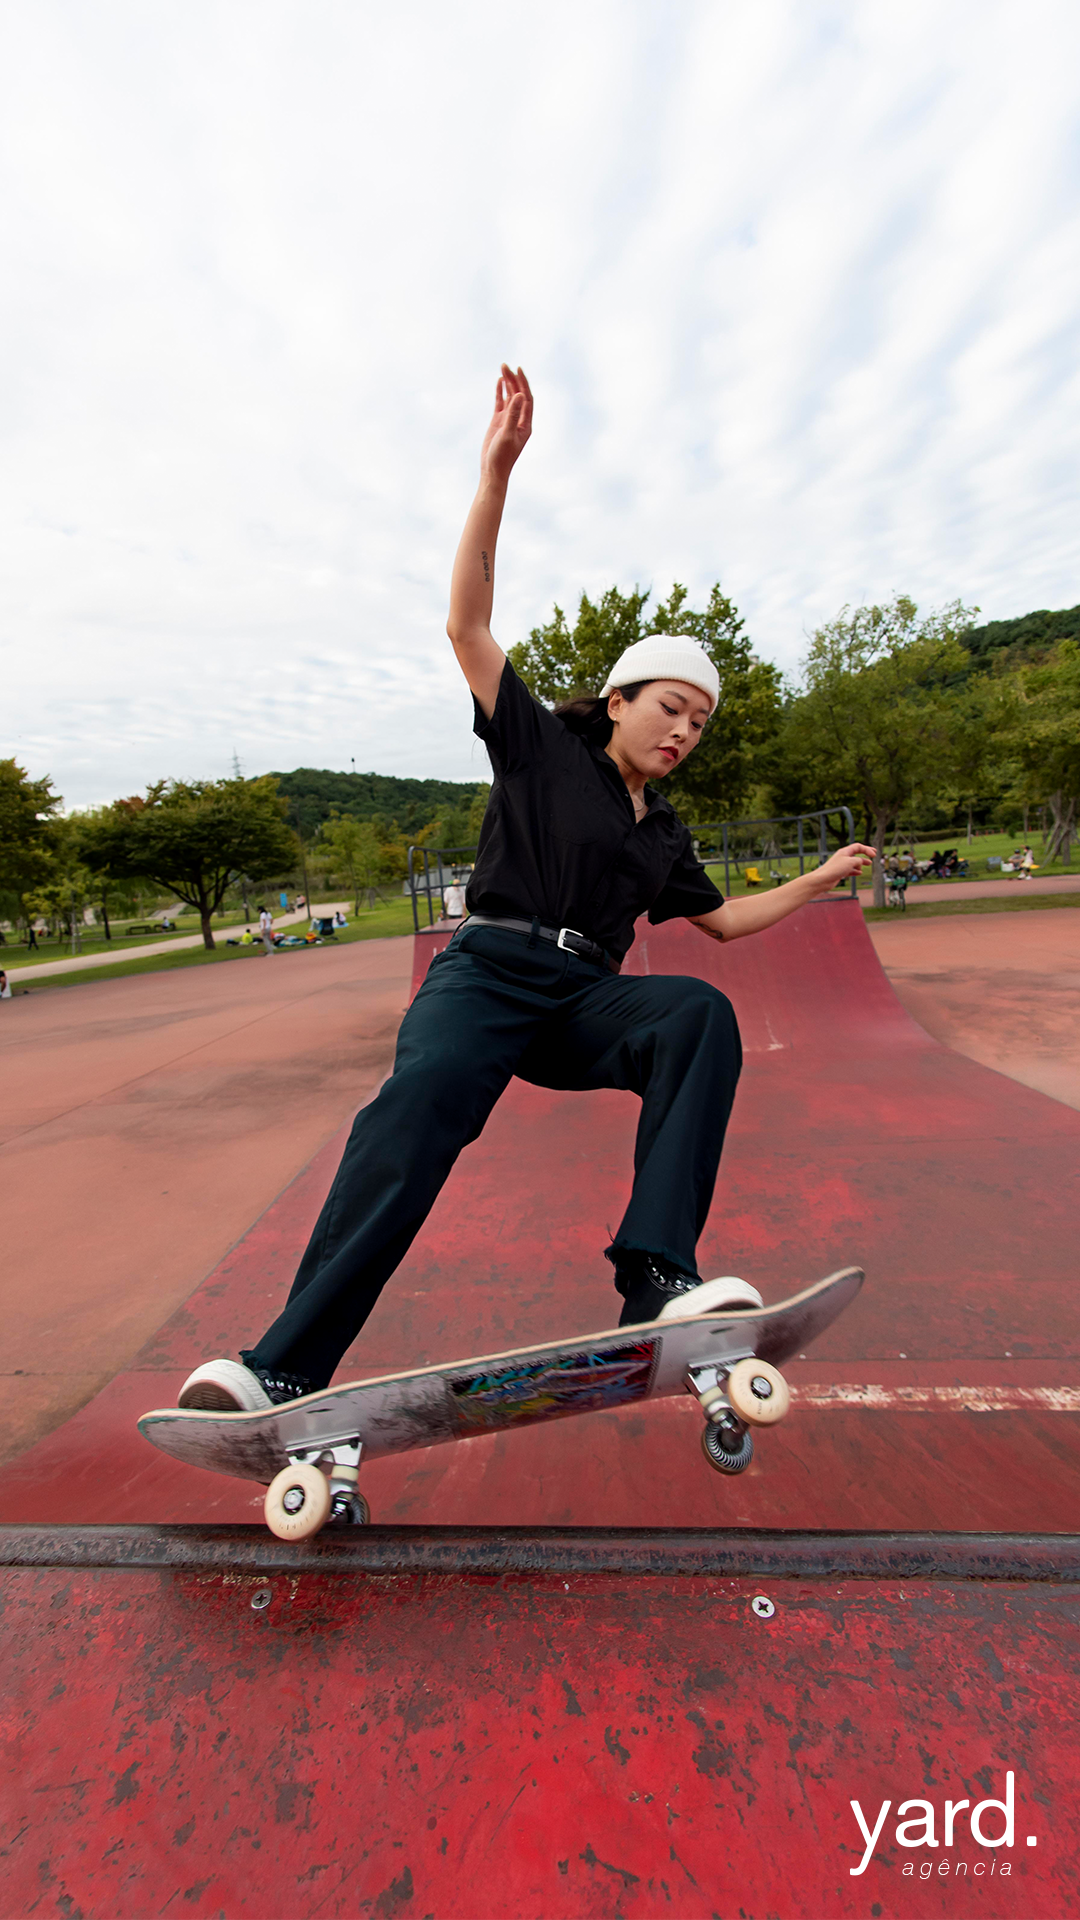 imagem em formato vertifical de uma menina fazendo uma manobra de skate em uma pista